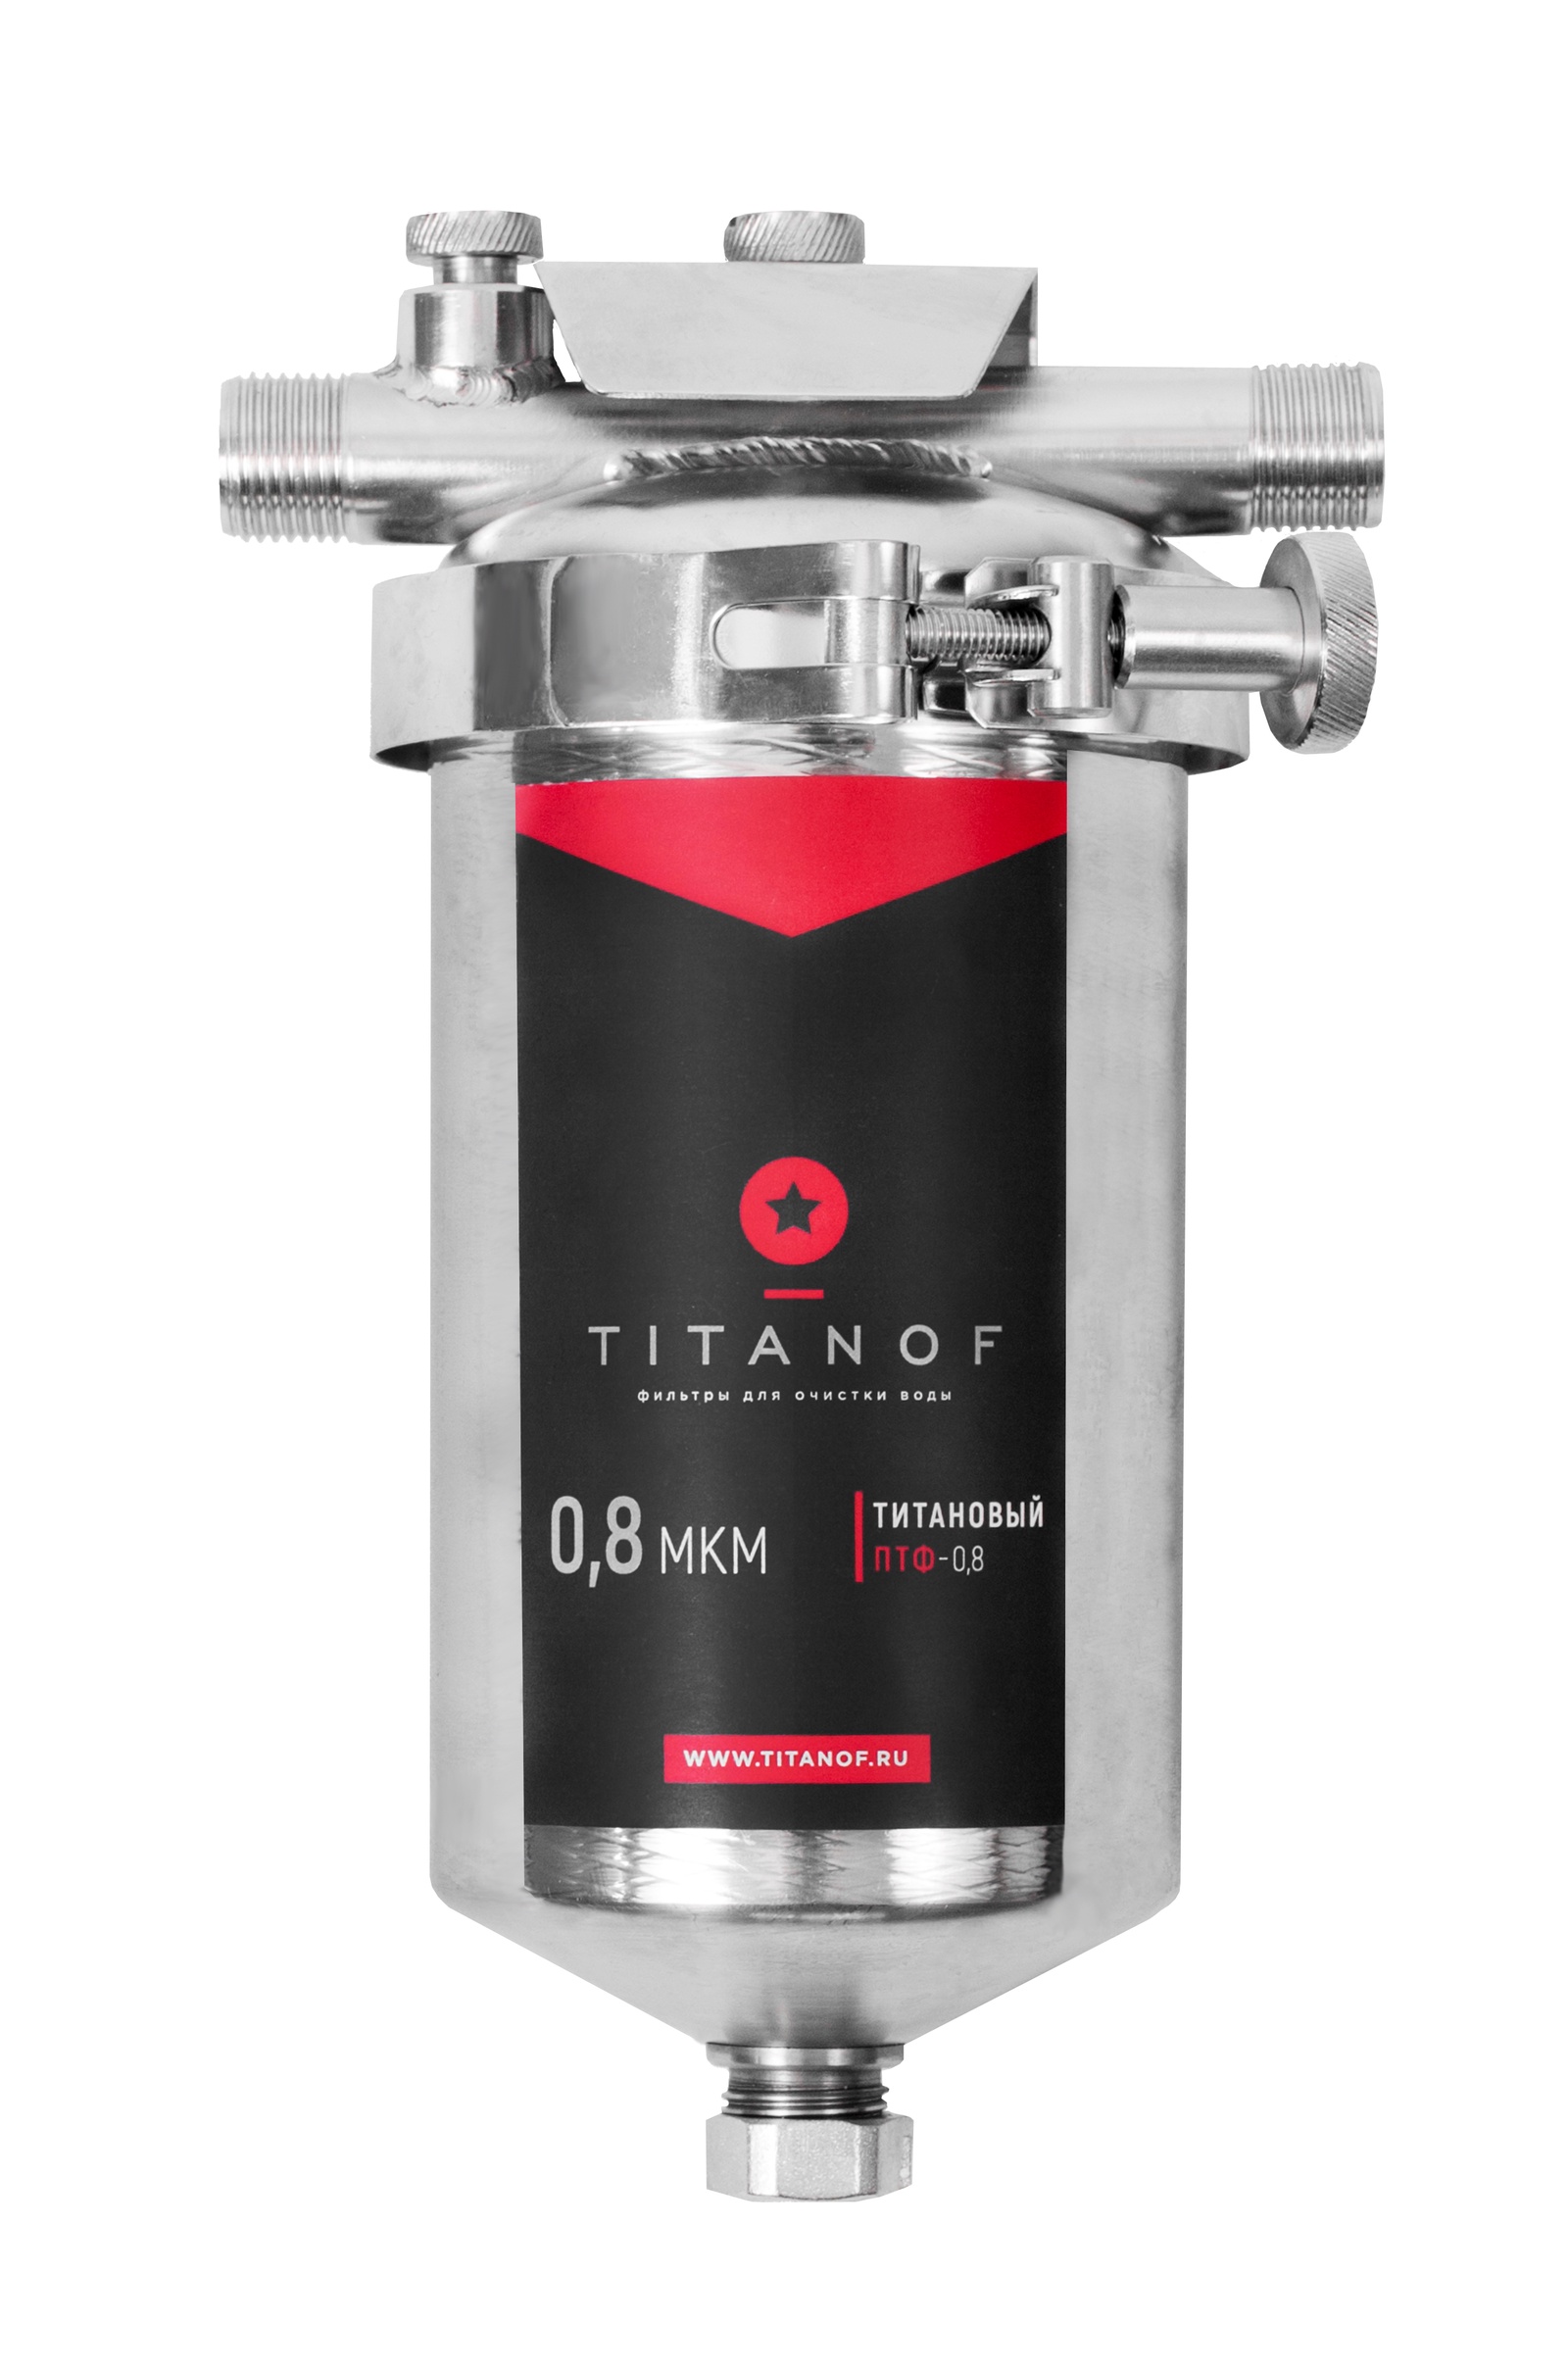 Фильтр для воды титанов отзывы. Титановый фильтр для воды TITANOF ПТФ 1.1 (1000 Л /час). Фильтр магистральный TITANOF ПТФ-1 500 для холодной и горячей воды. Титановый фильтр для воды TITANOF ПТФ 1 500 Л/час 002. Фильтр магистральный TITANOF ПТФ-0.8 250 для холодной и горячей воды.